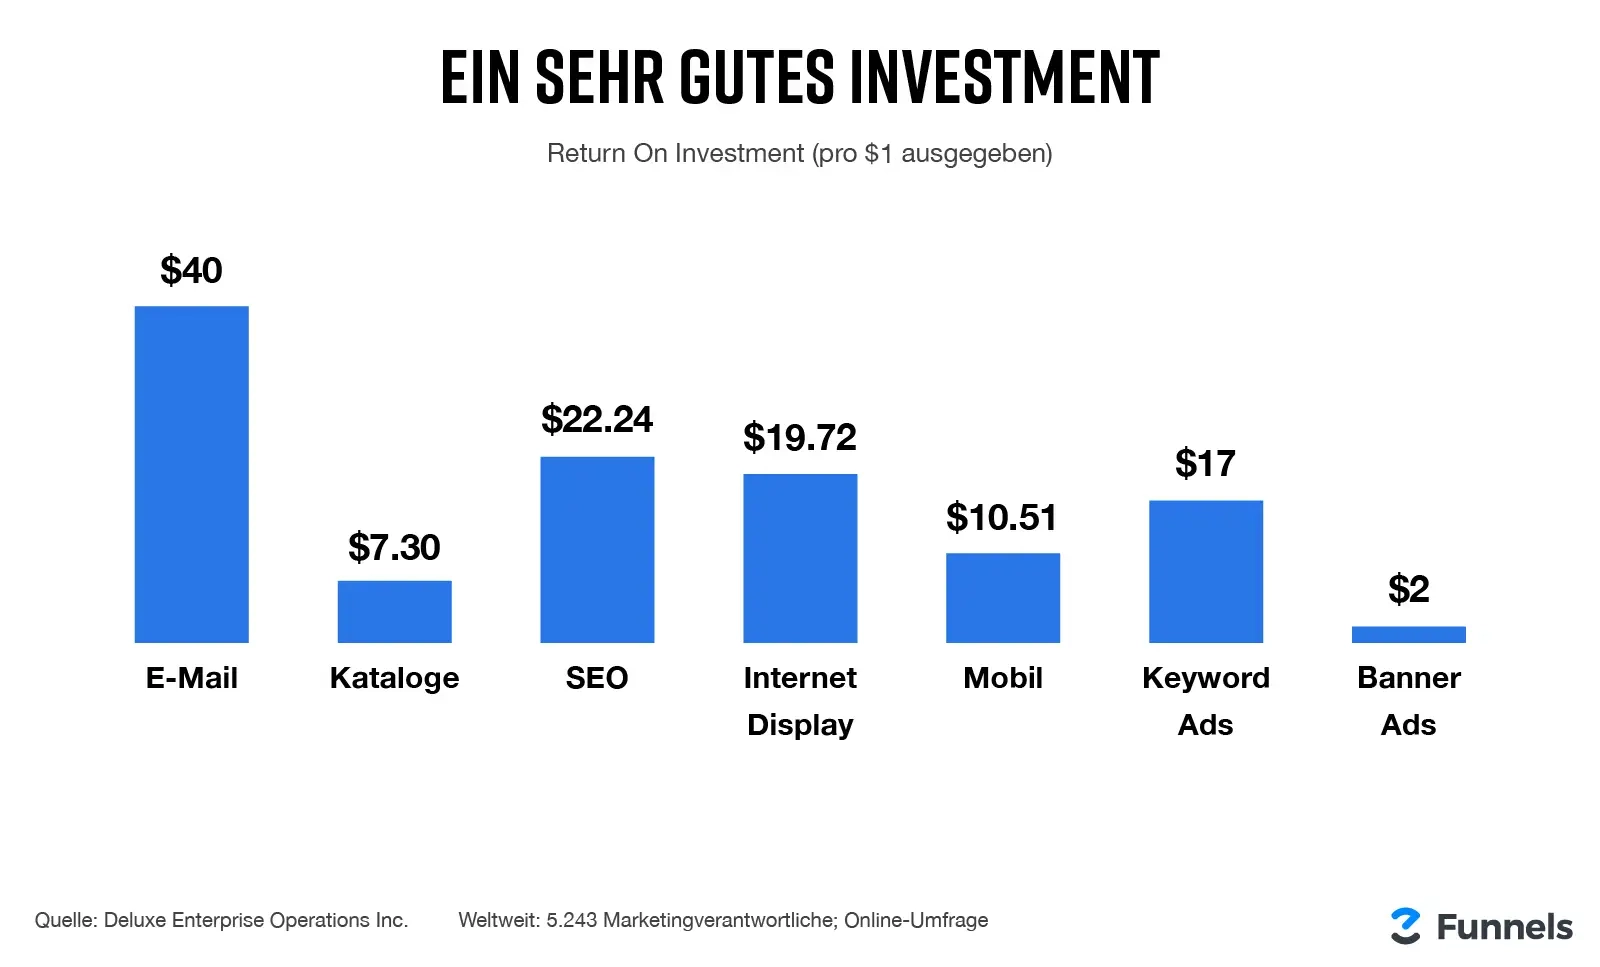 E-Mail-Marketing bringt von allen Werbeformen die meisten Einnahmen pro ausgegebenem Euro.